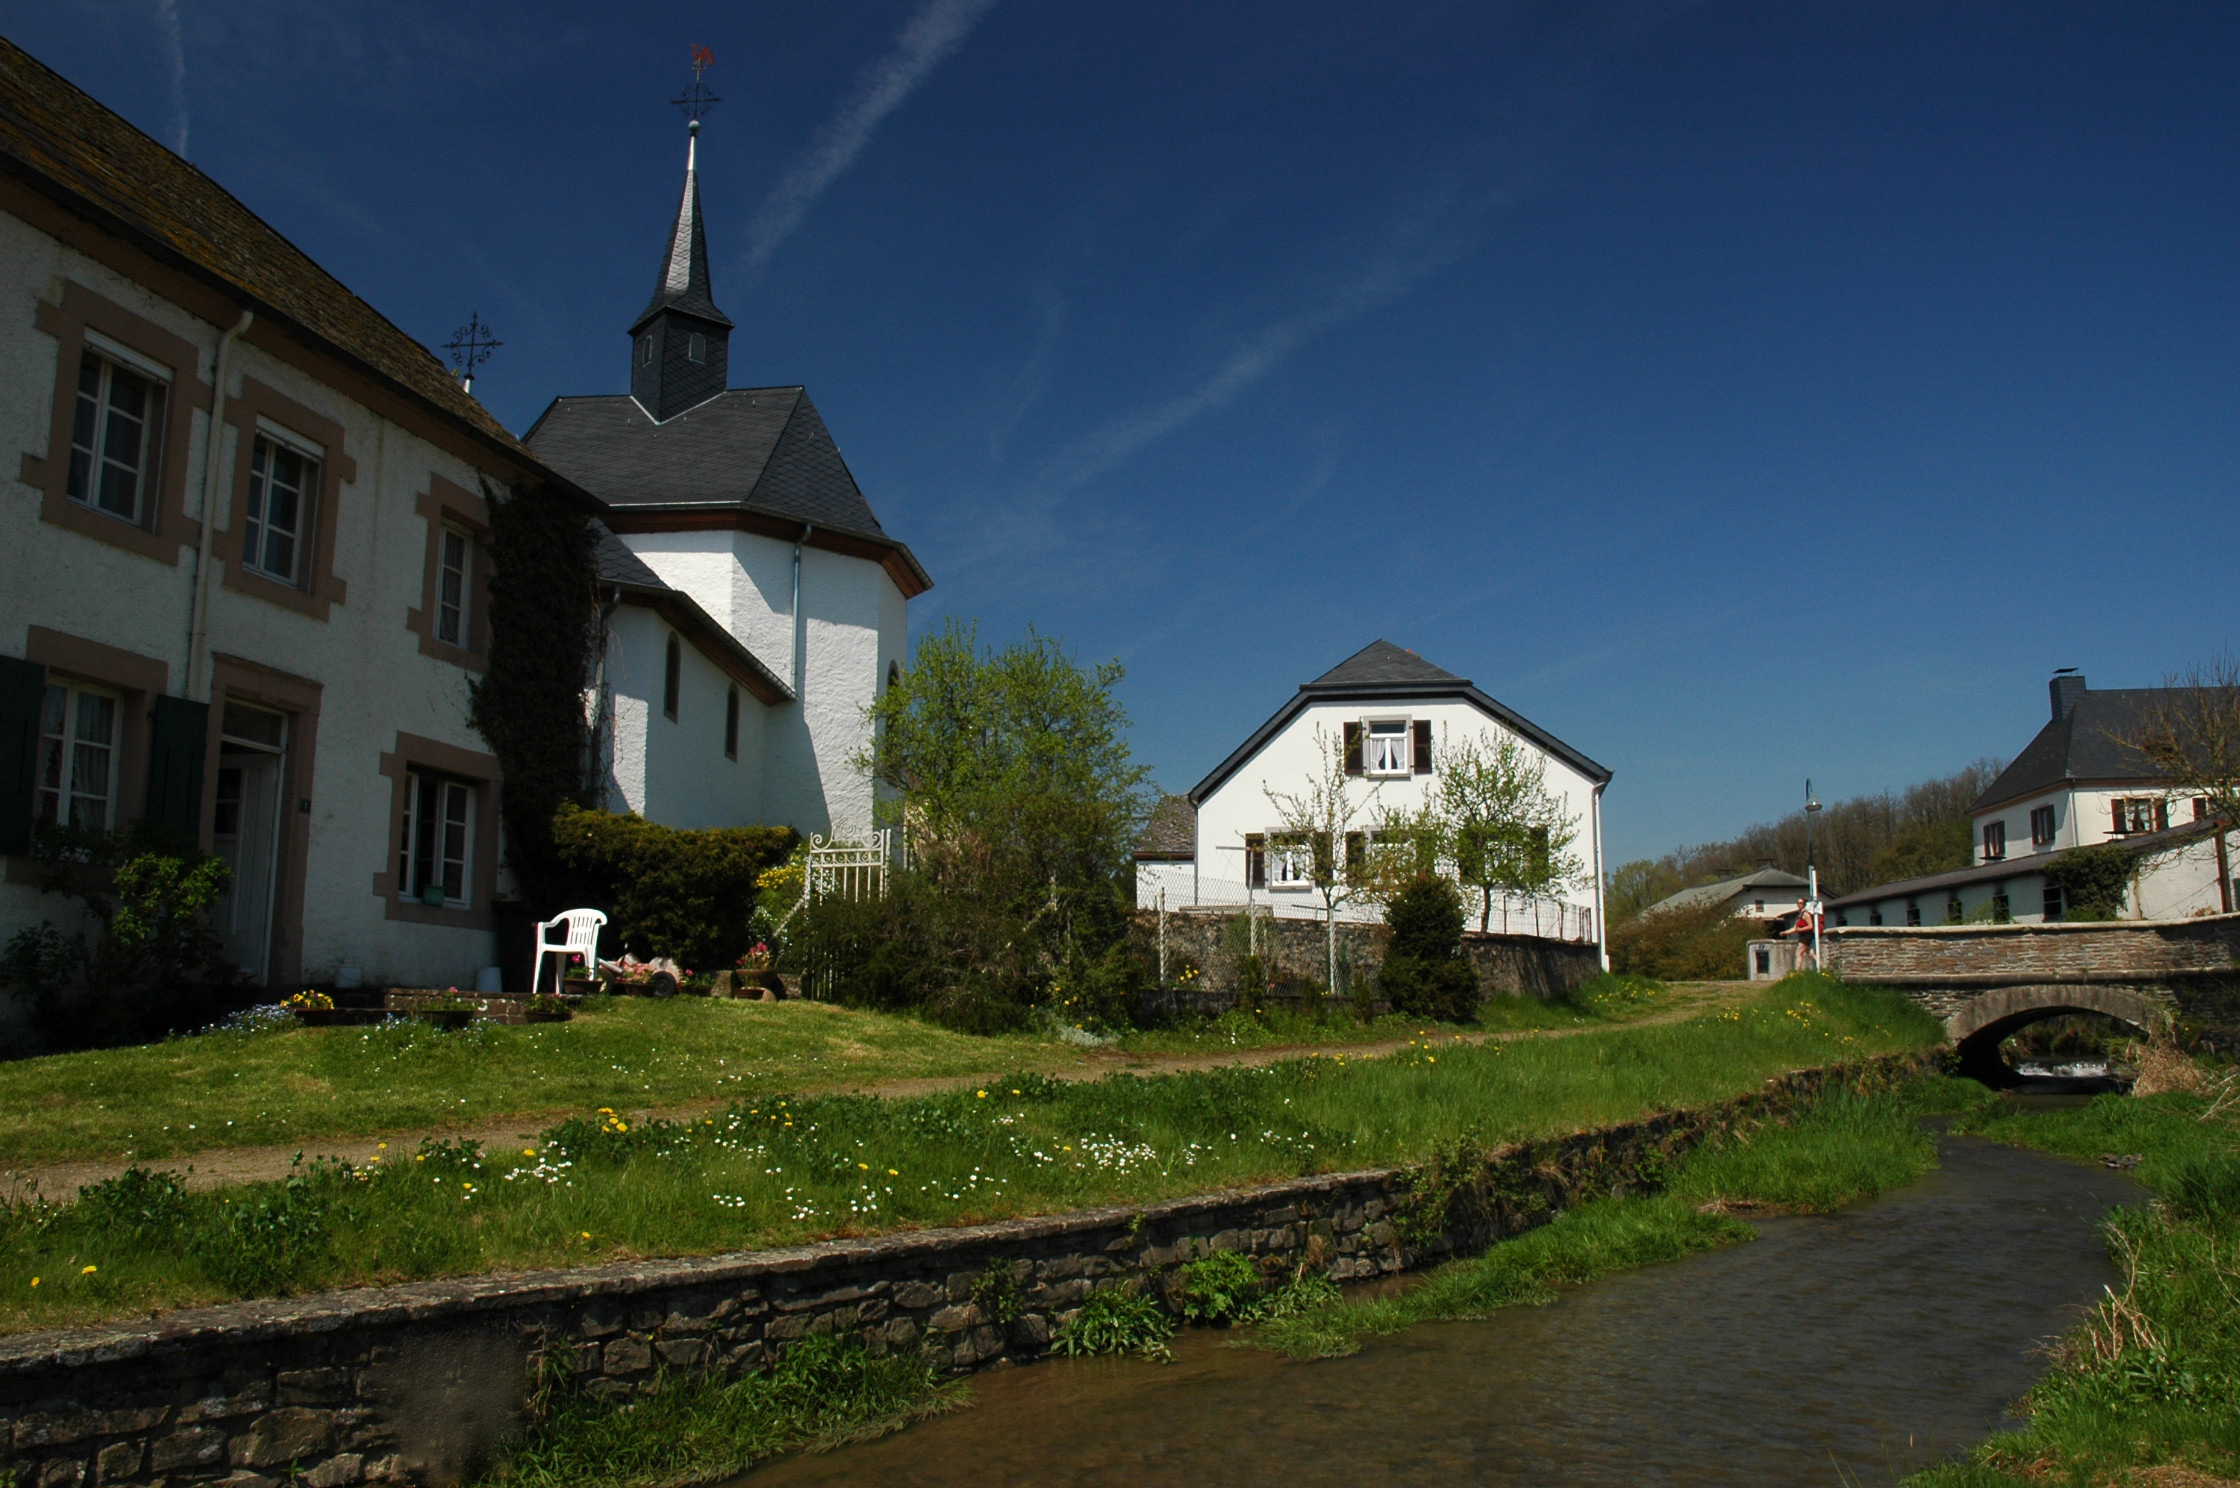 Lellingen Village